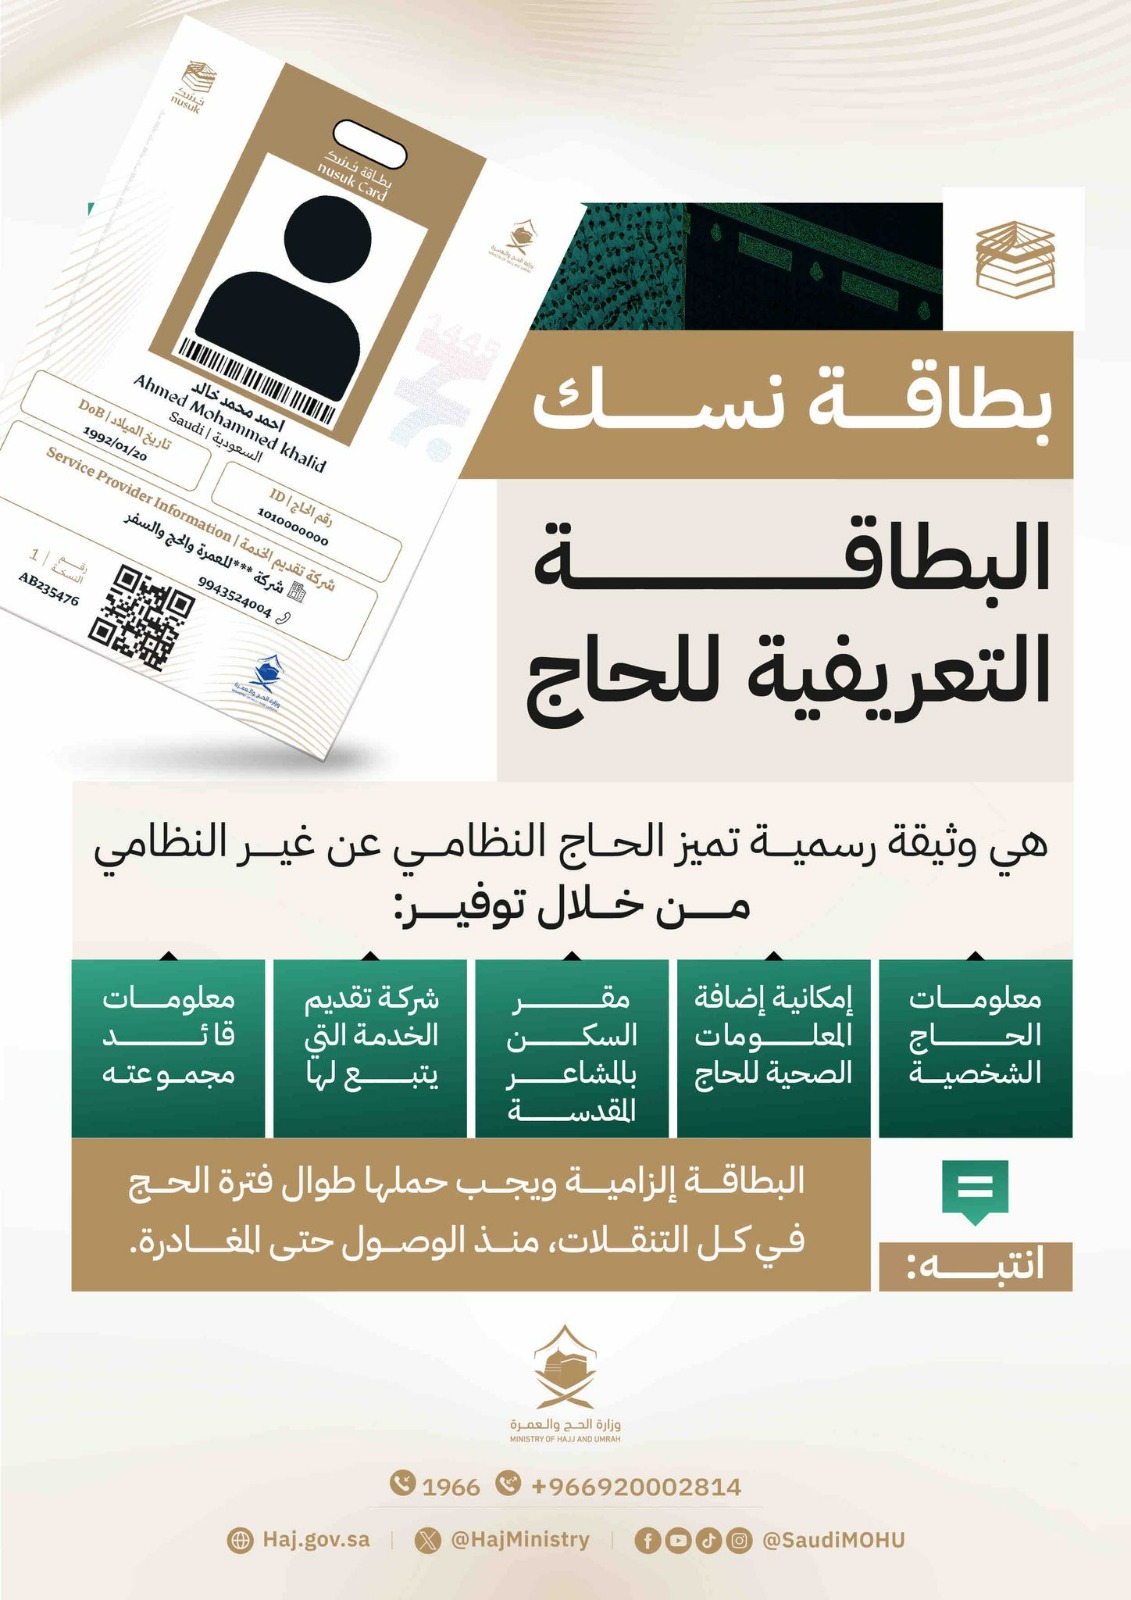 وزارة الحج والعمرة السعودية تعلن أنه  لن يسمح بدخول المشاعر المقدسة لغير حاملي بطاقة "نسك" .